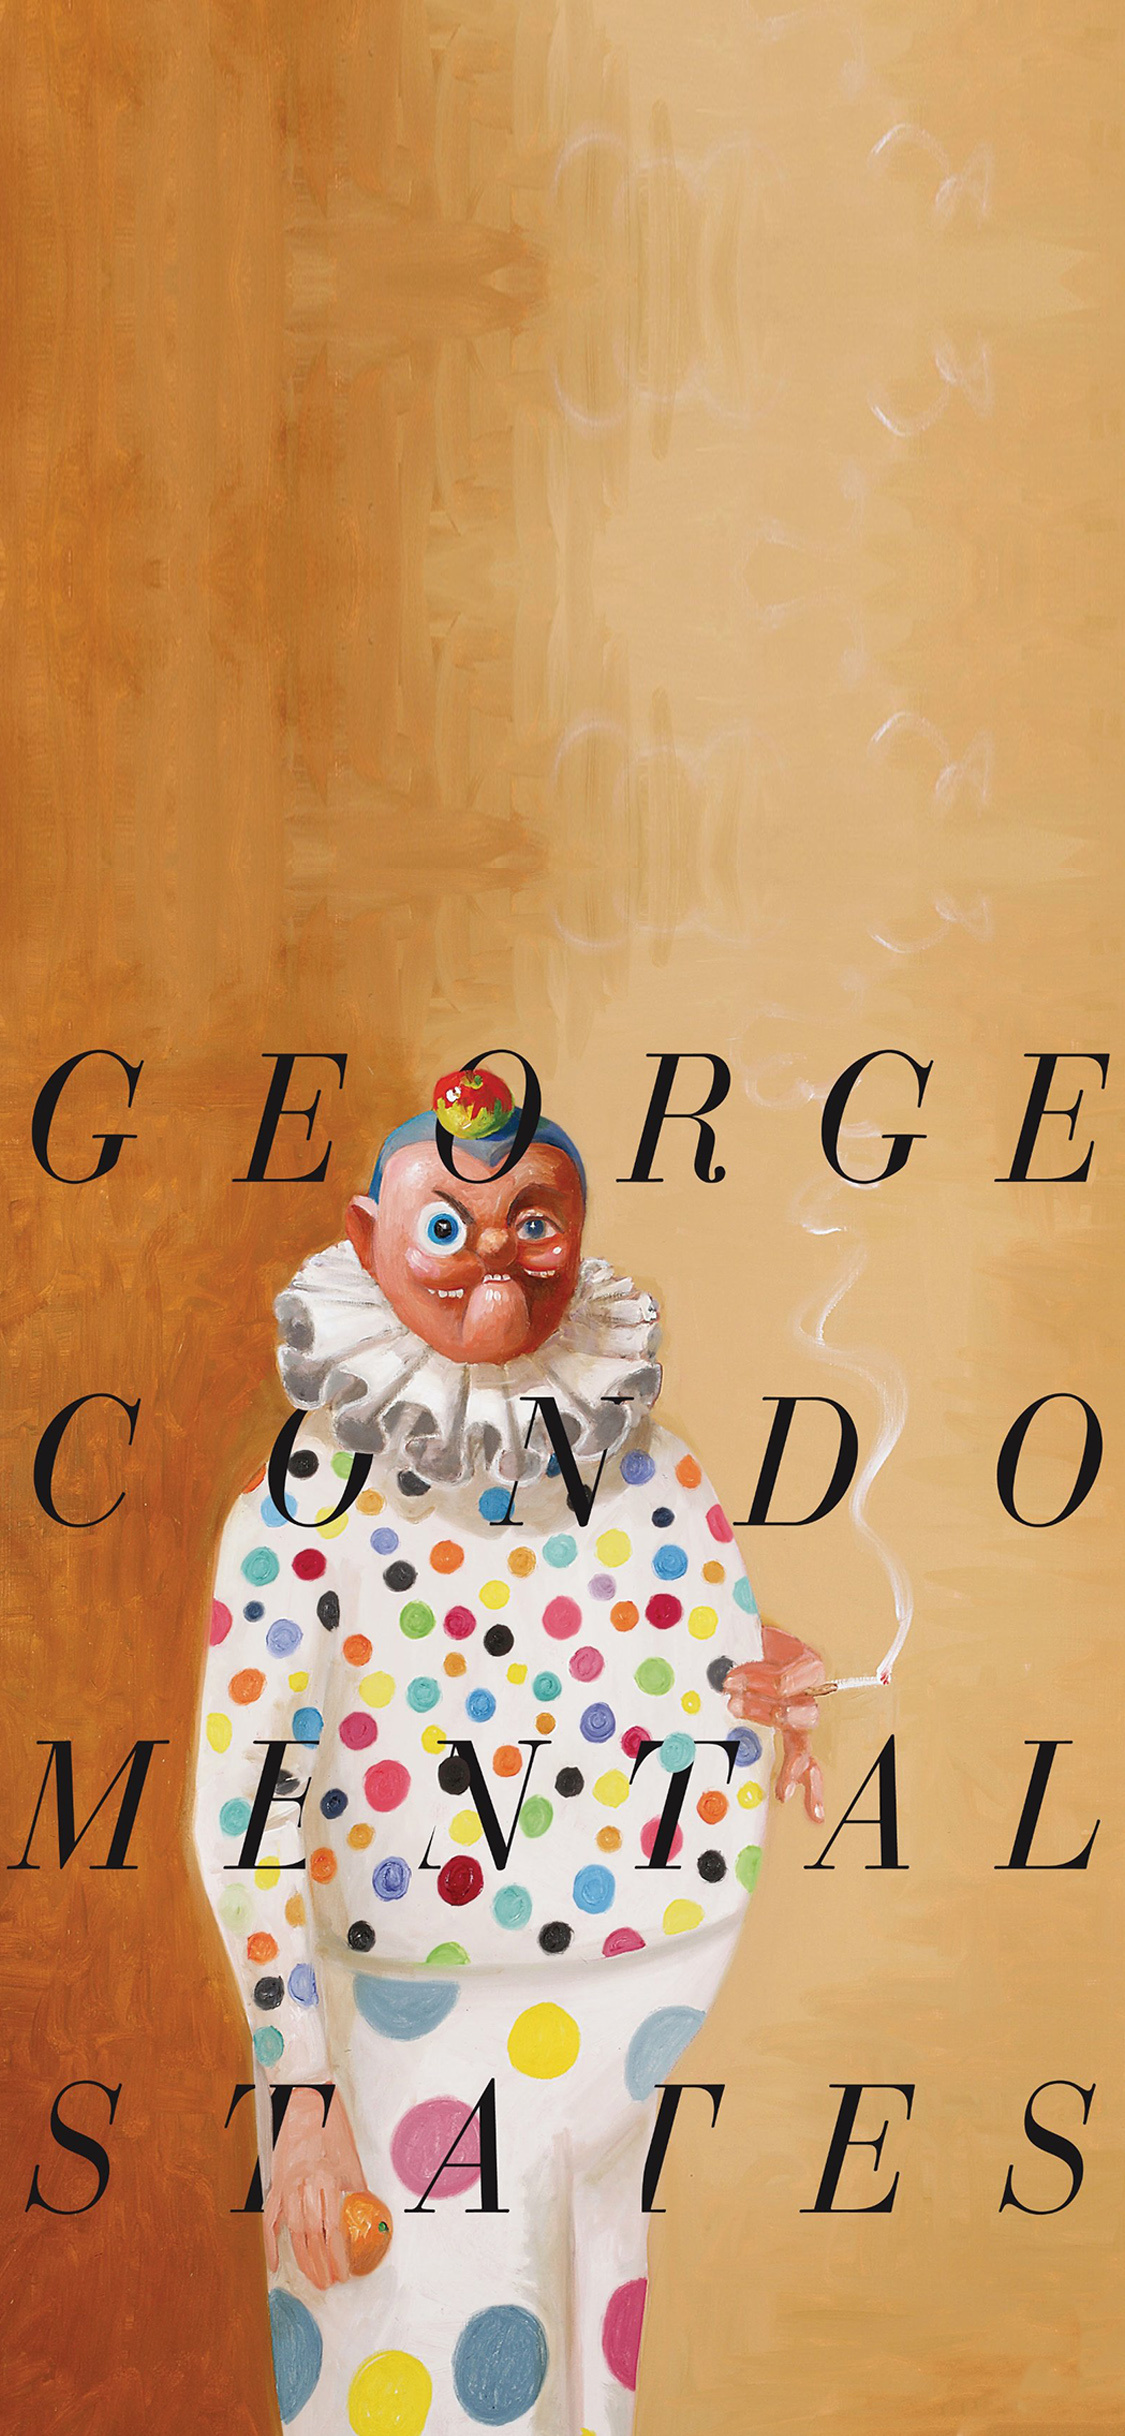 乔治康多艺术创意手机壁纸